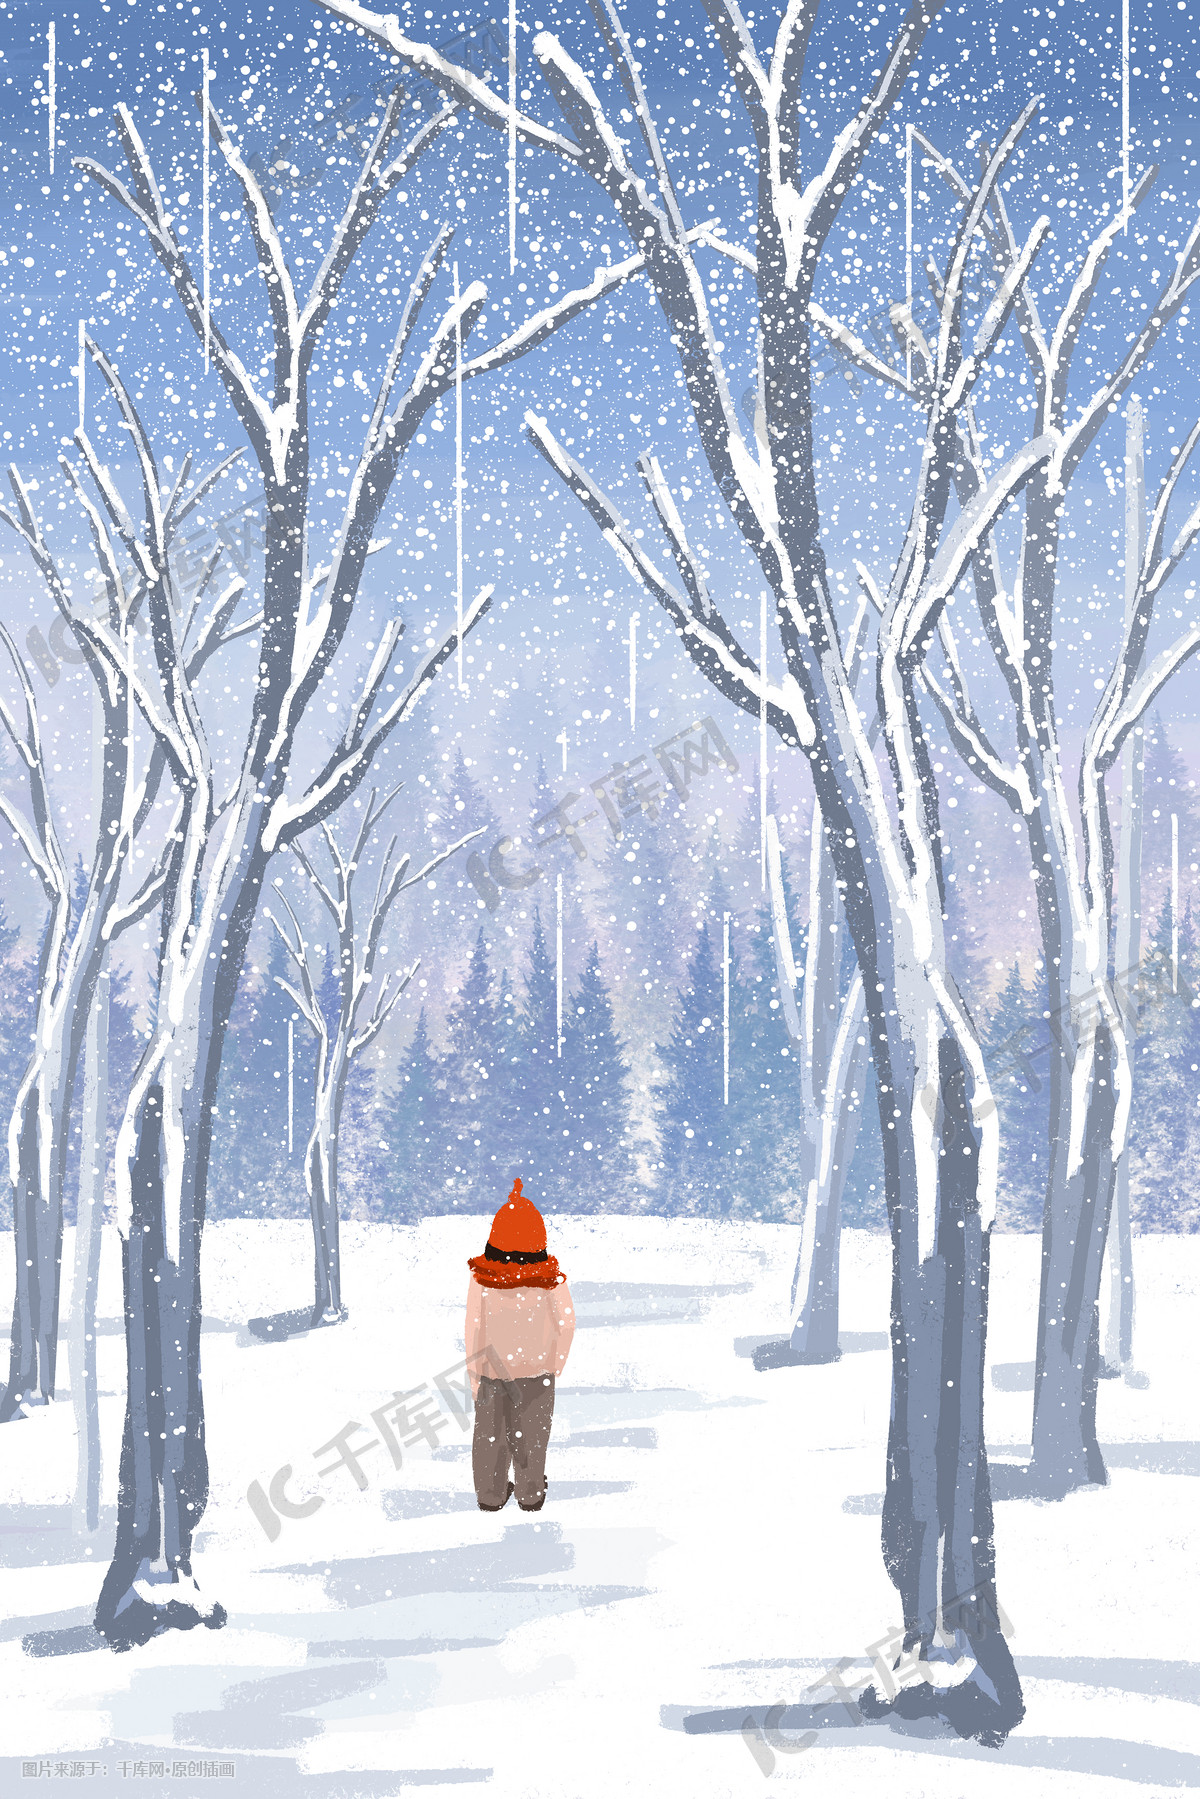 四季水墨风景冬季雪景山水画手绘素材插画图片-千库网